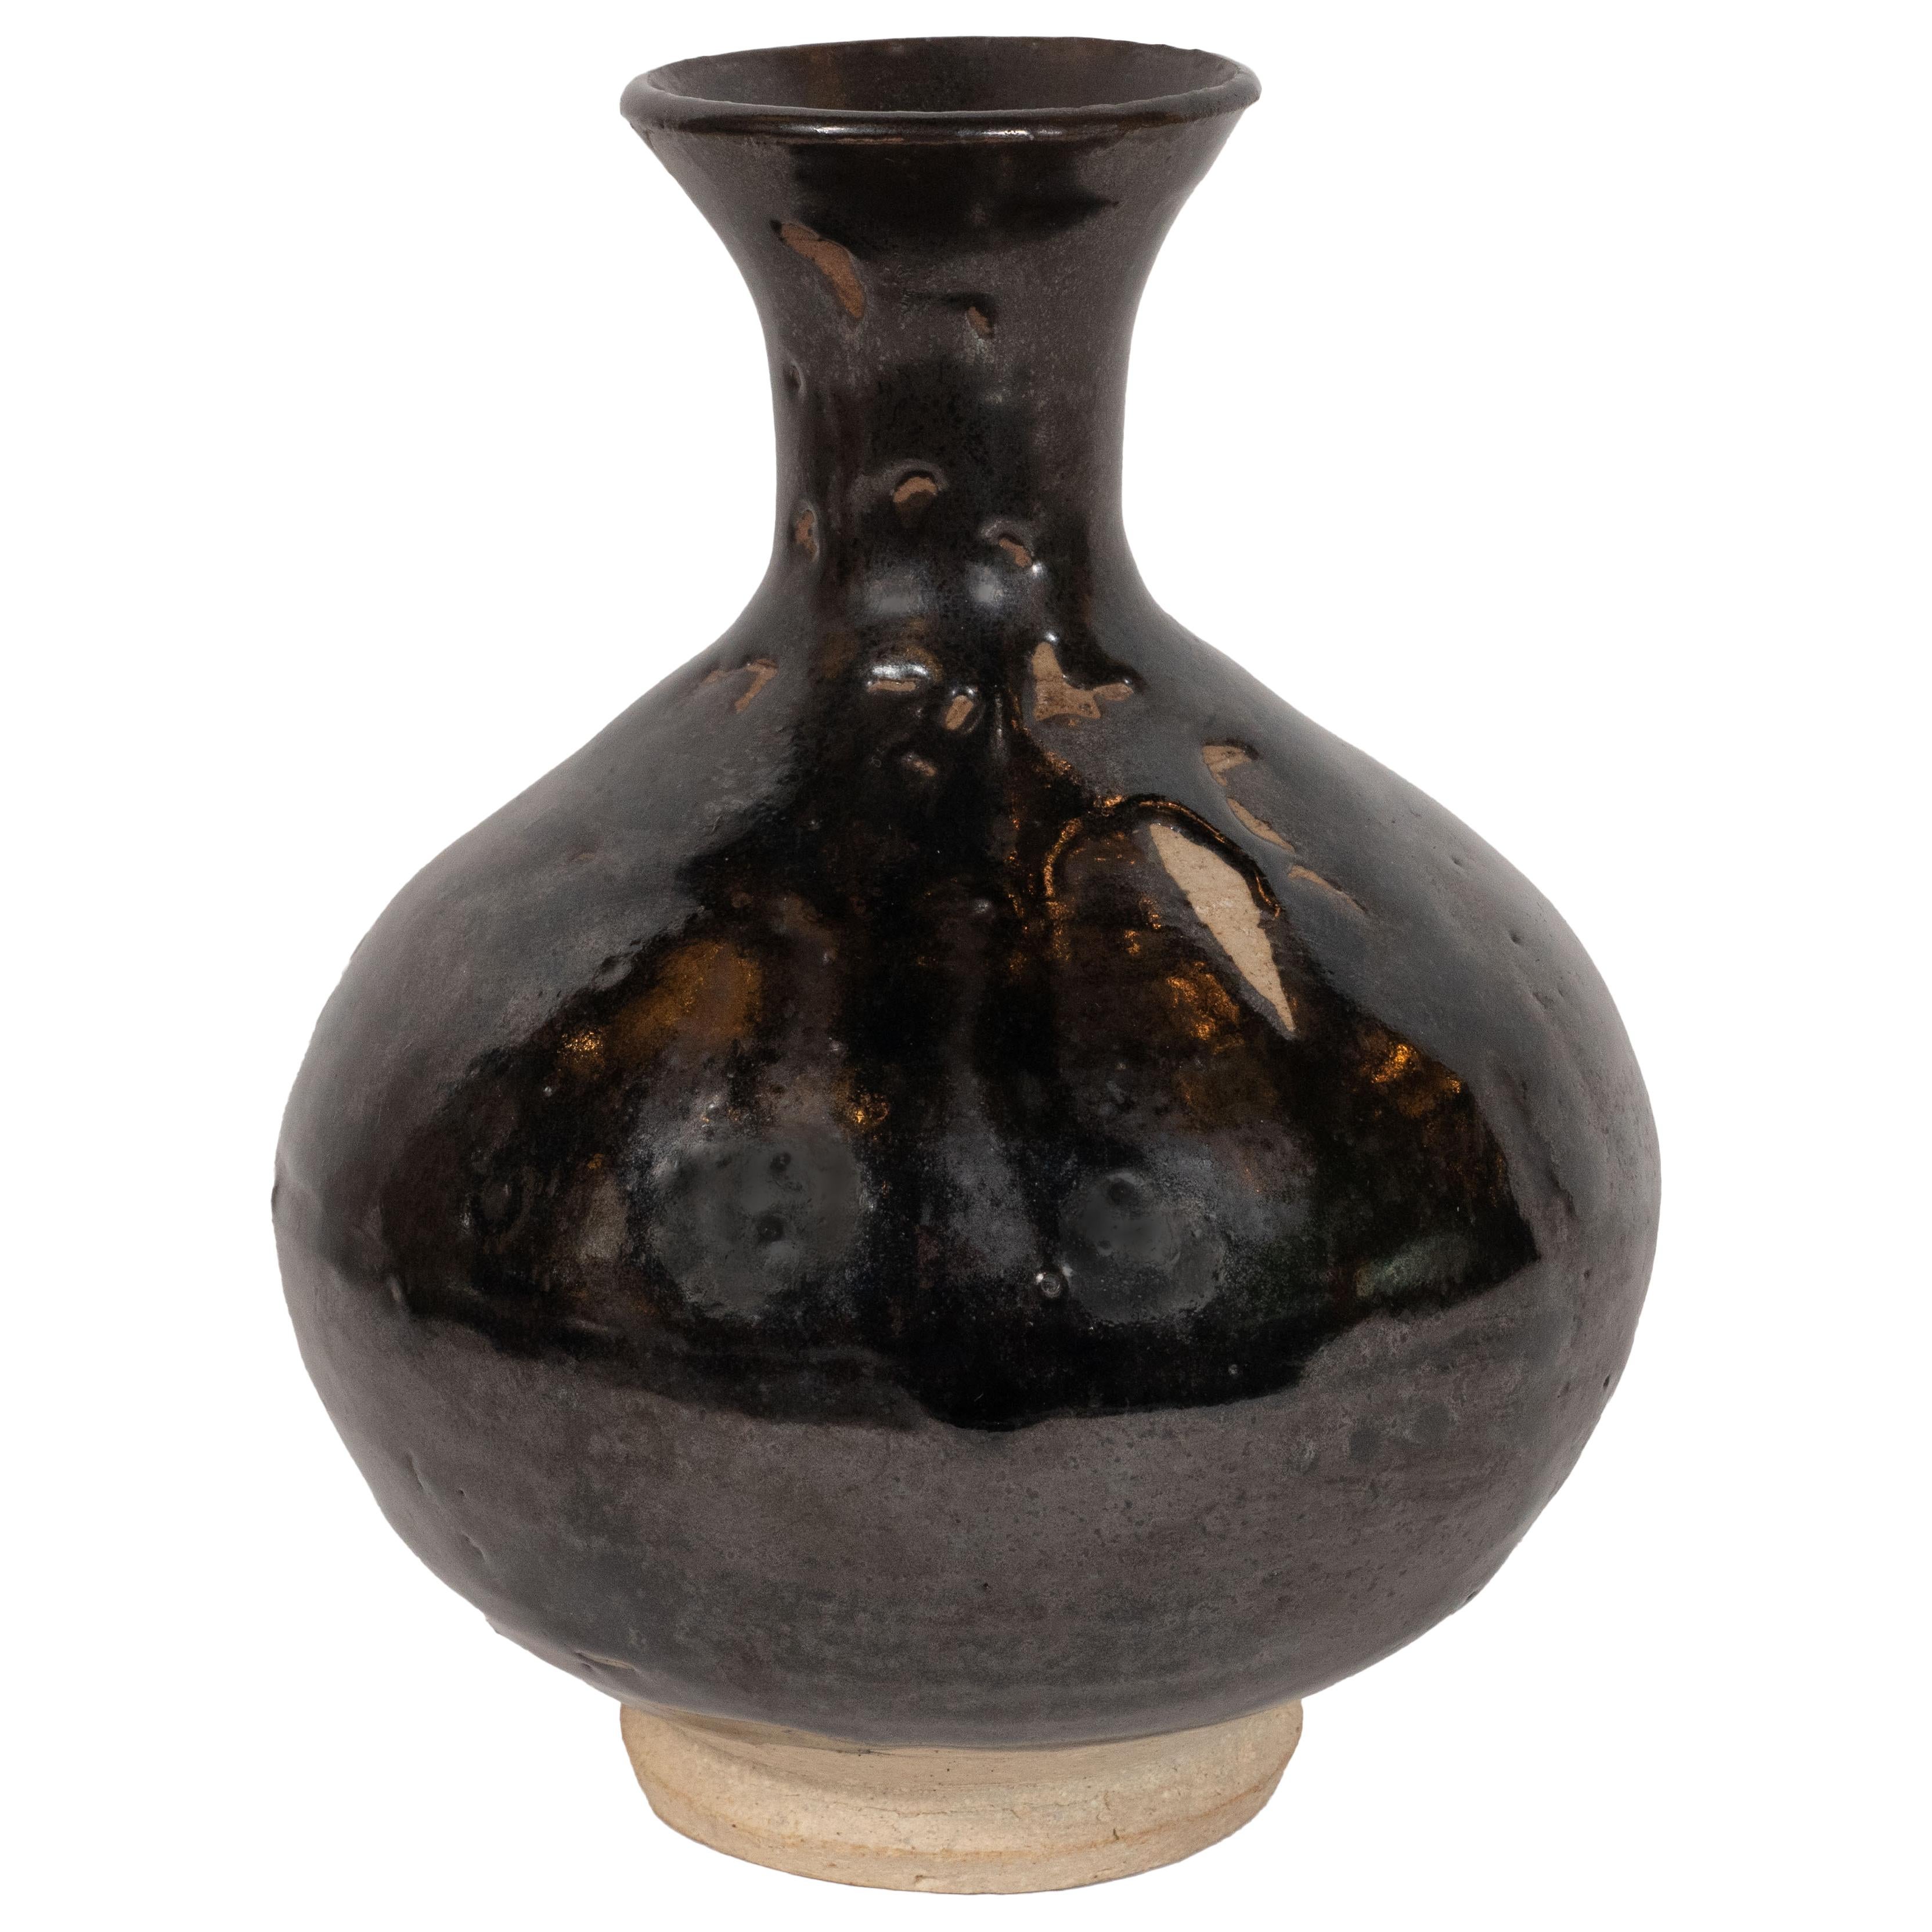 Diese raffinierte Vase der Jahrhundertmitte wurde um 1960 in Dänemark hergestellt. Sie hat einen kugelförmigen Körper, der sich zum Hals hin dramatisch verjüngt, bevor er sich nach außen hin wieder zu einer kreisförmigen Öffnung erweitert. Die